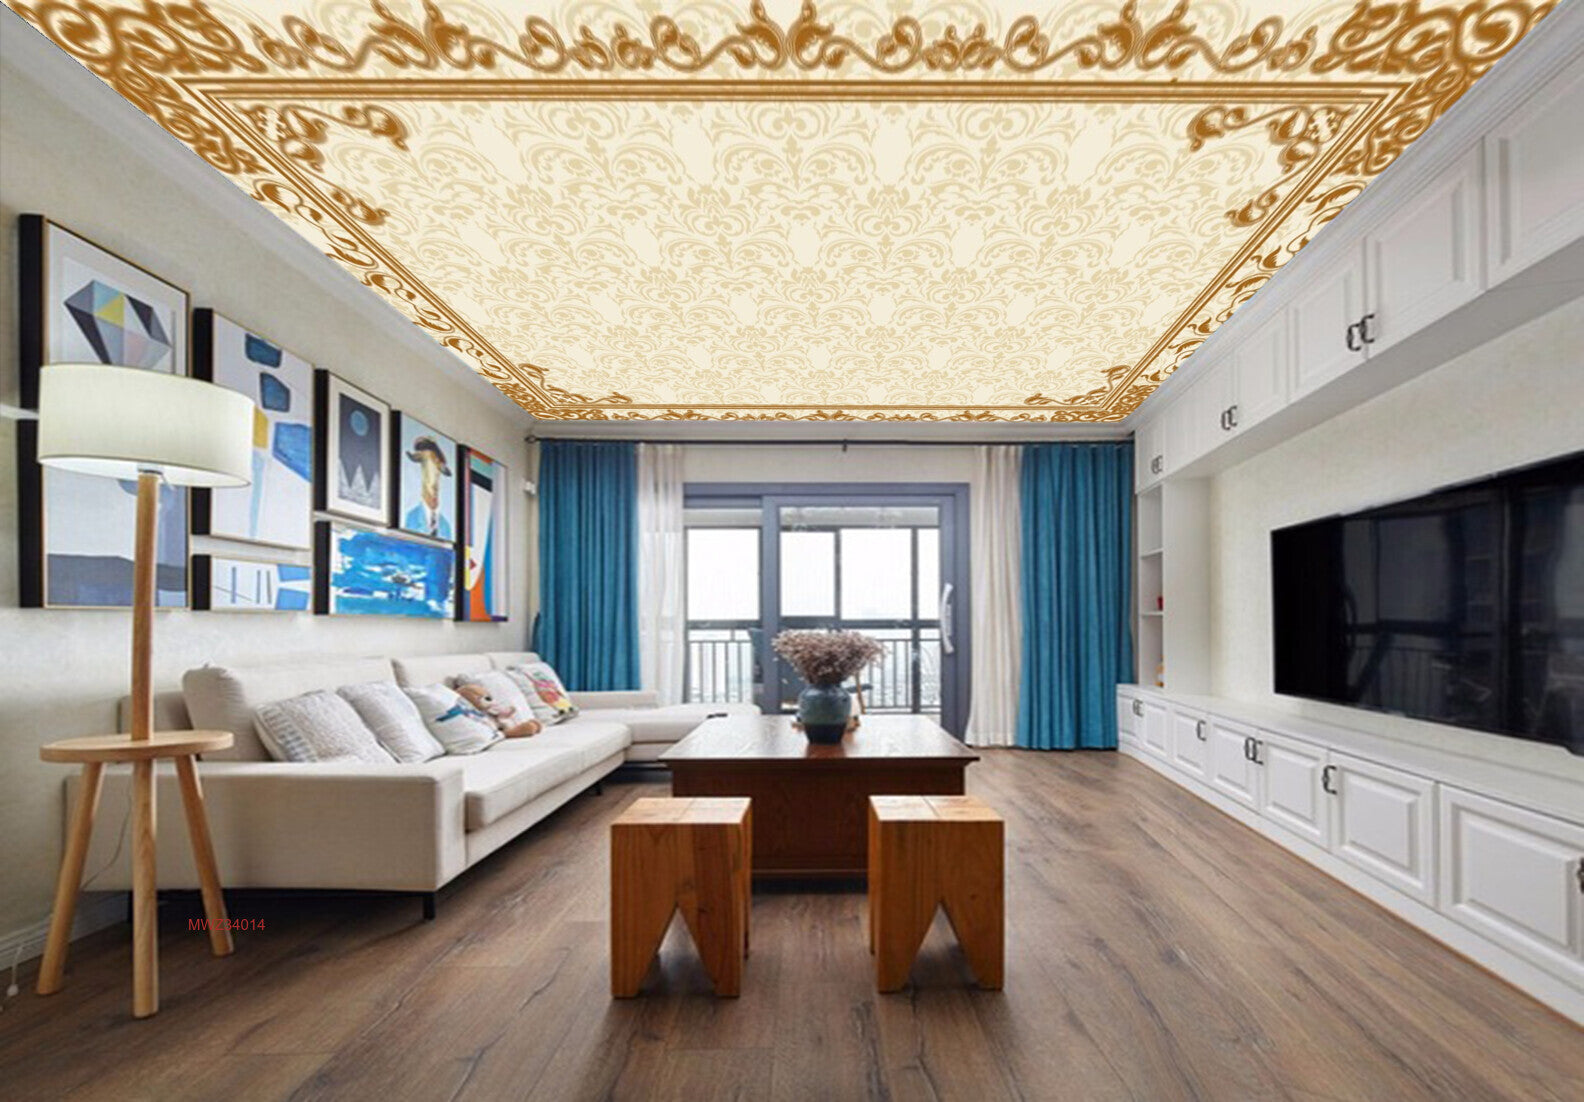 Avikalp MWZ3401 White Golden Floral Design HD Wallpaper for Ceiling